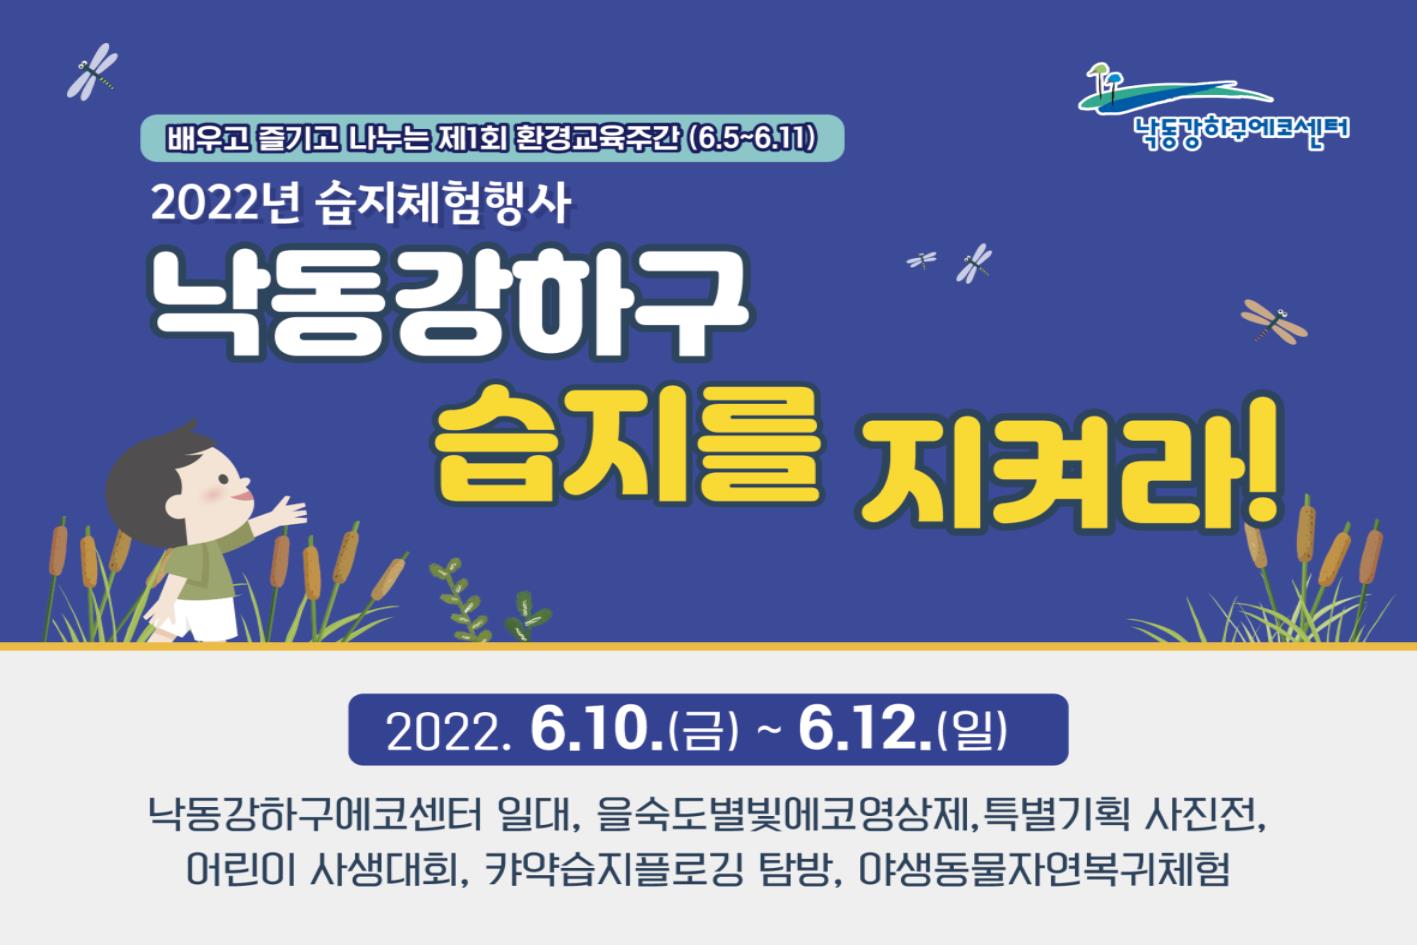 「2022 습지체험행사」 개최 홍보포스터, 낙동강하구 습지를 지켜라!